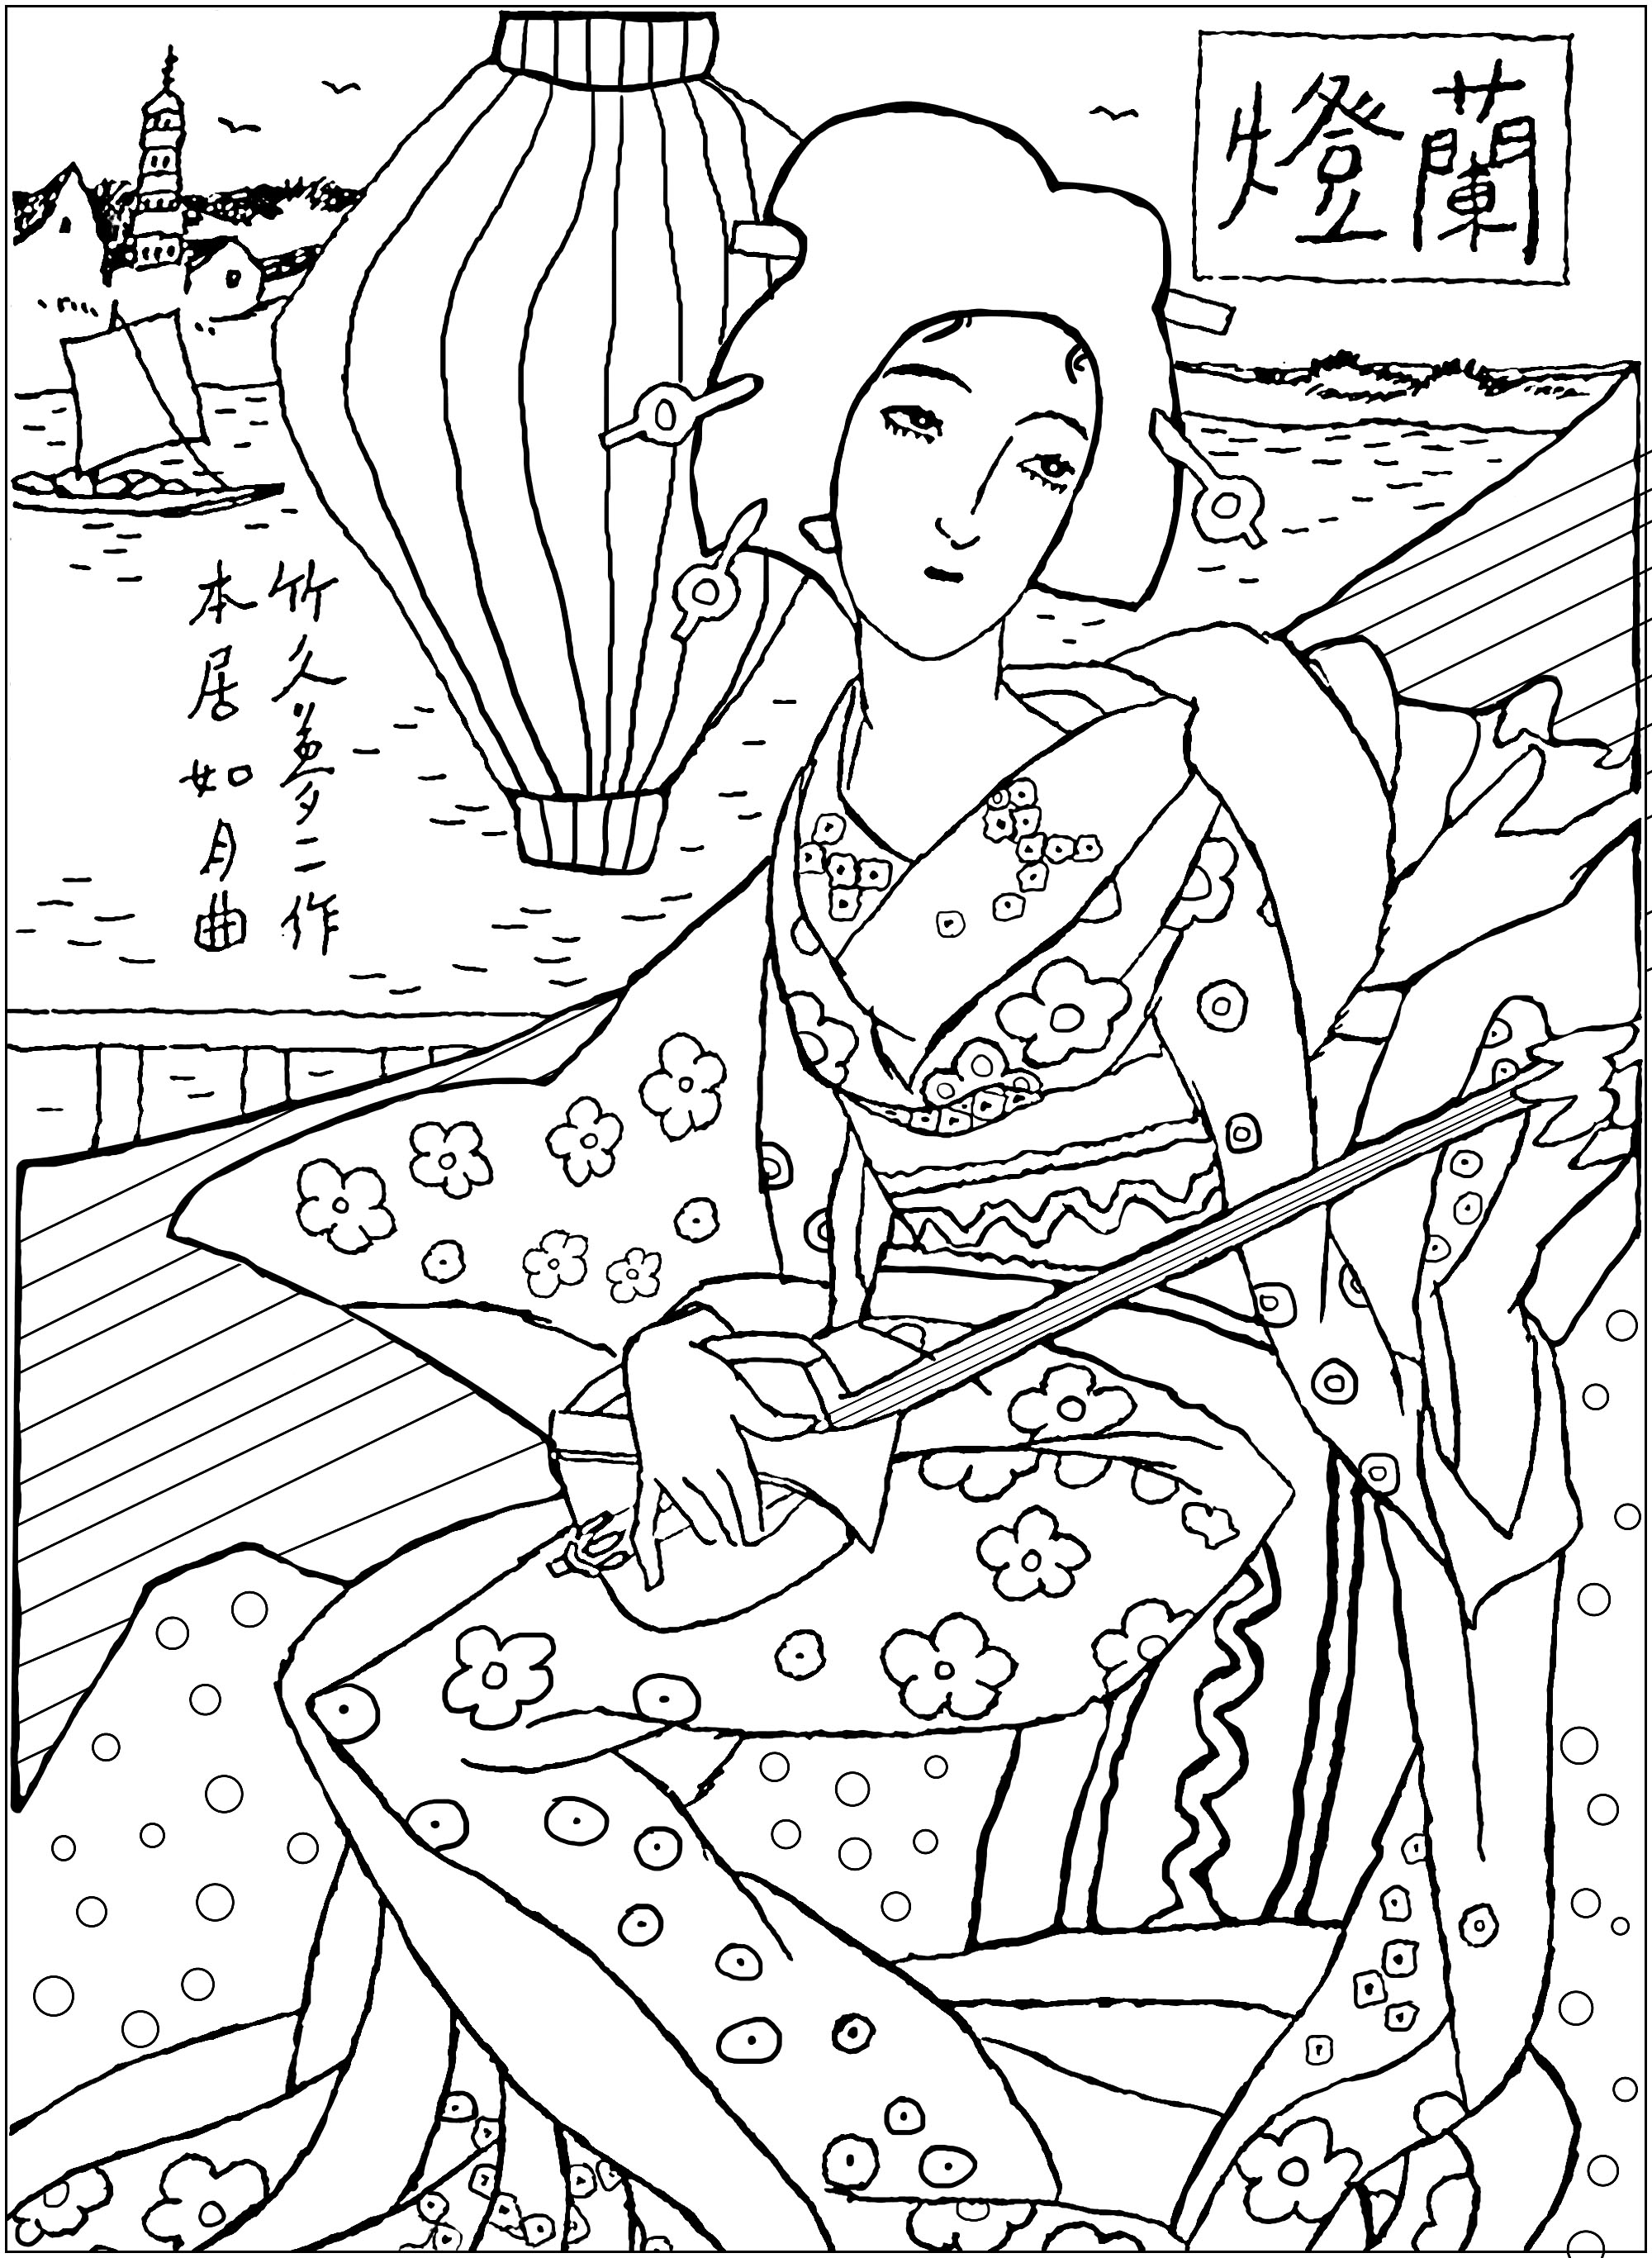 Disegno esclusivo ispirato a un quadro con una geisha giapponese